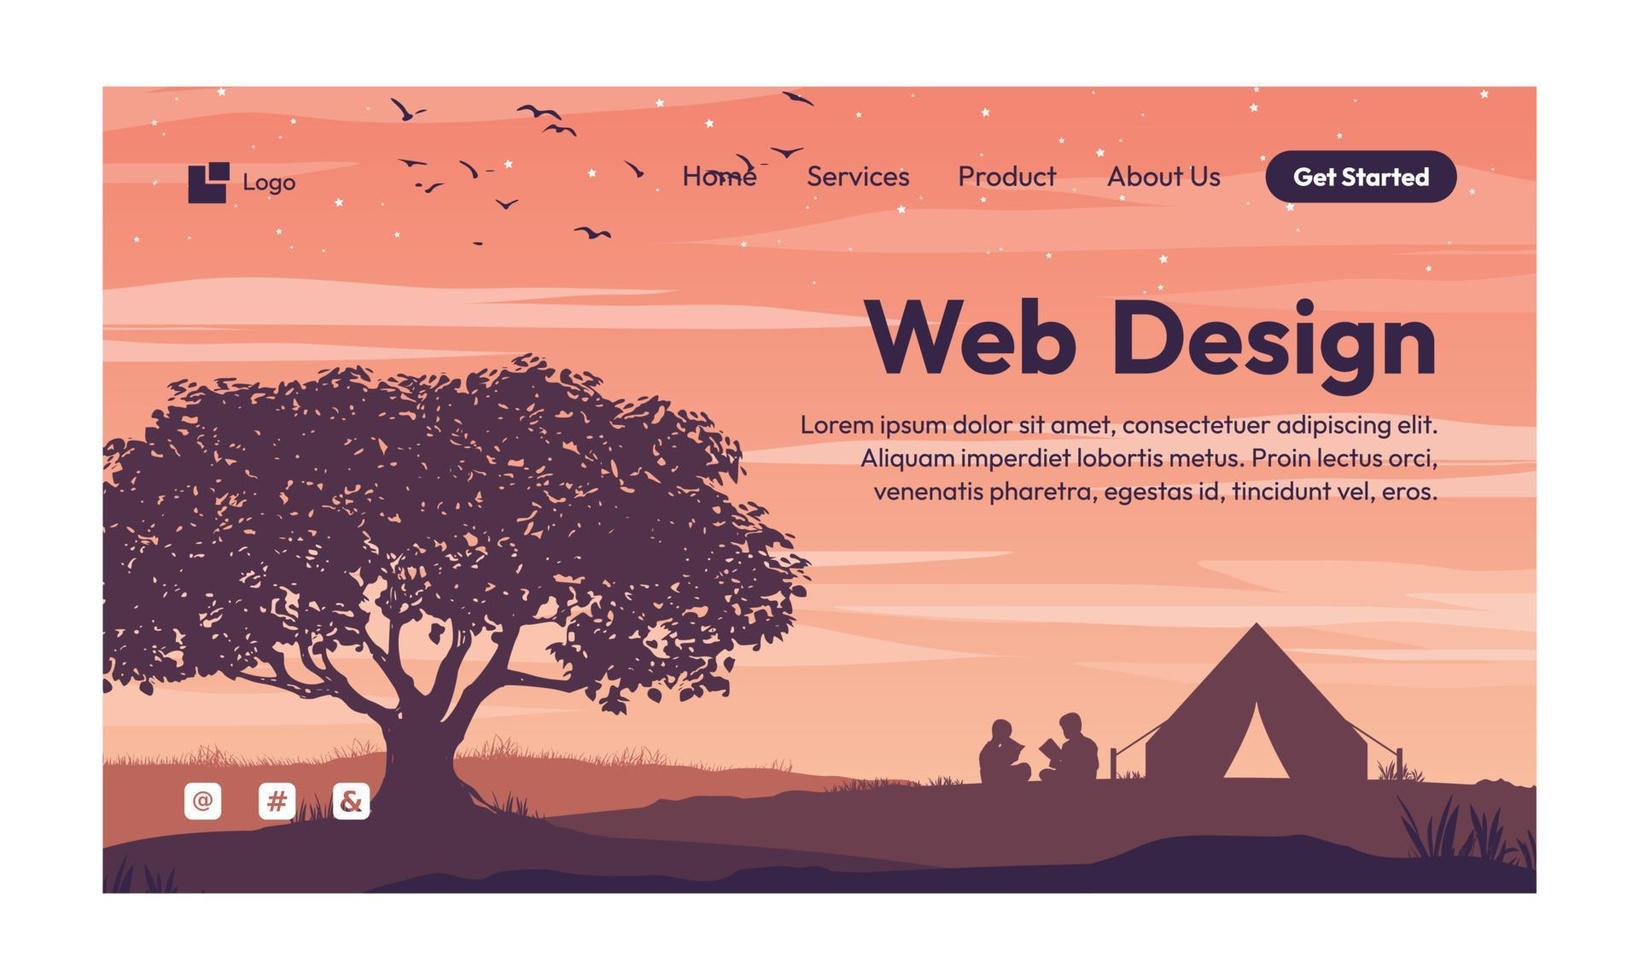 webdesign natuur landschap plat ontwerp bestemmingspagina vector